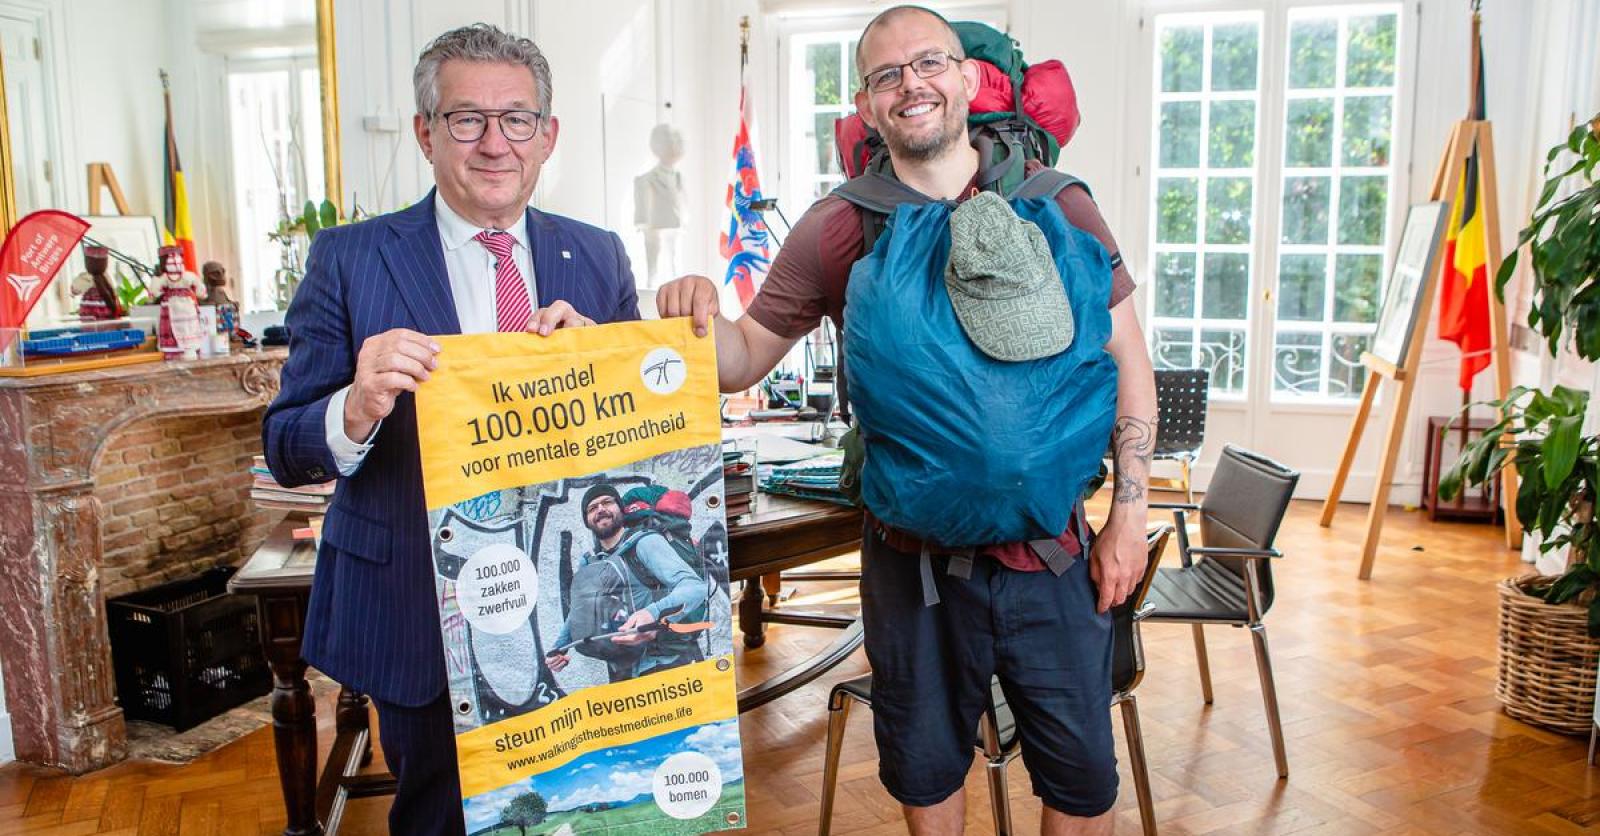 Un holandés que quiere caminar 100.000 km se detiene en Brujas: «Recojo la basura y planto árboles por el camino»